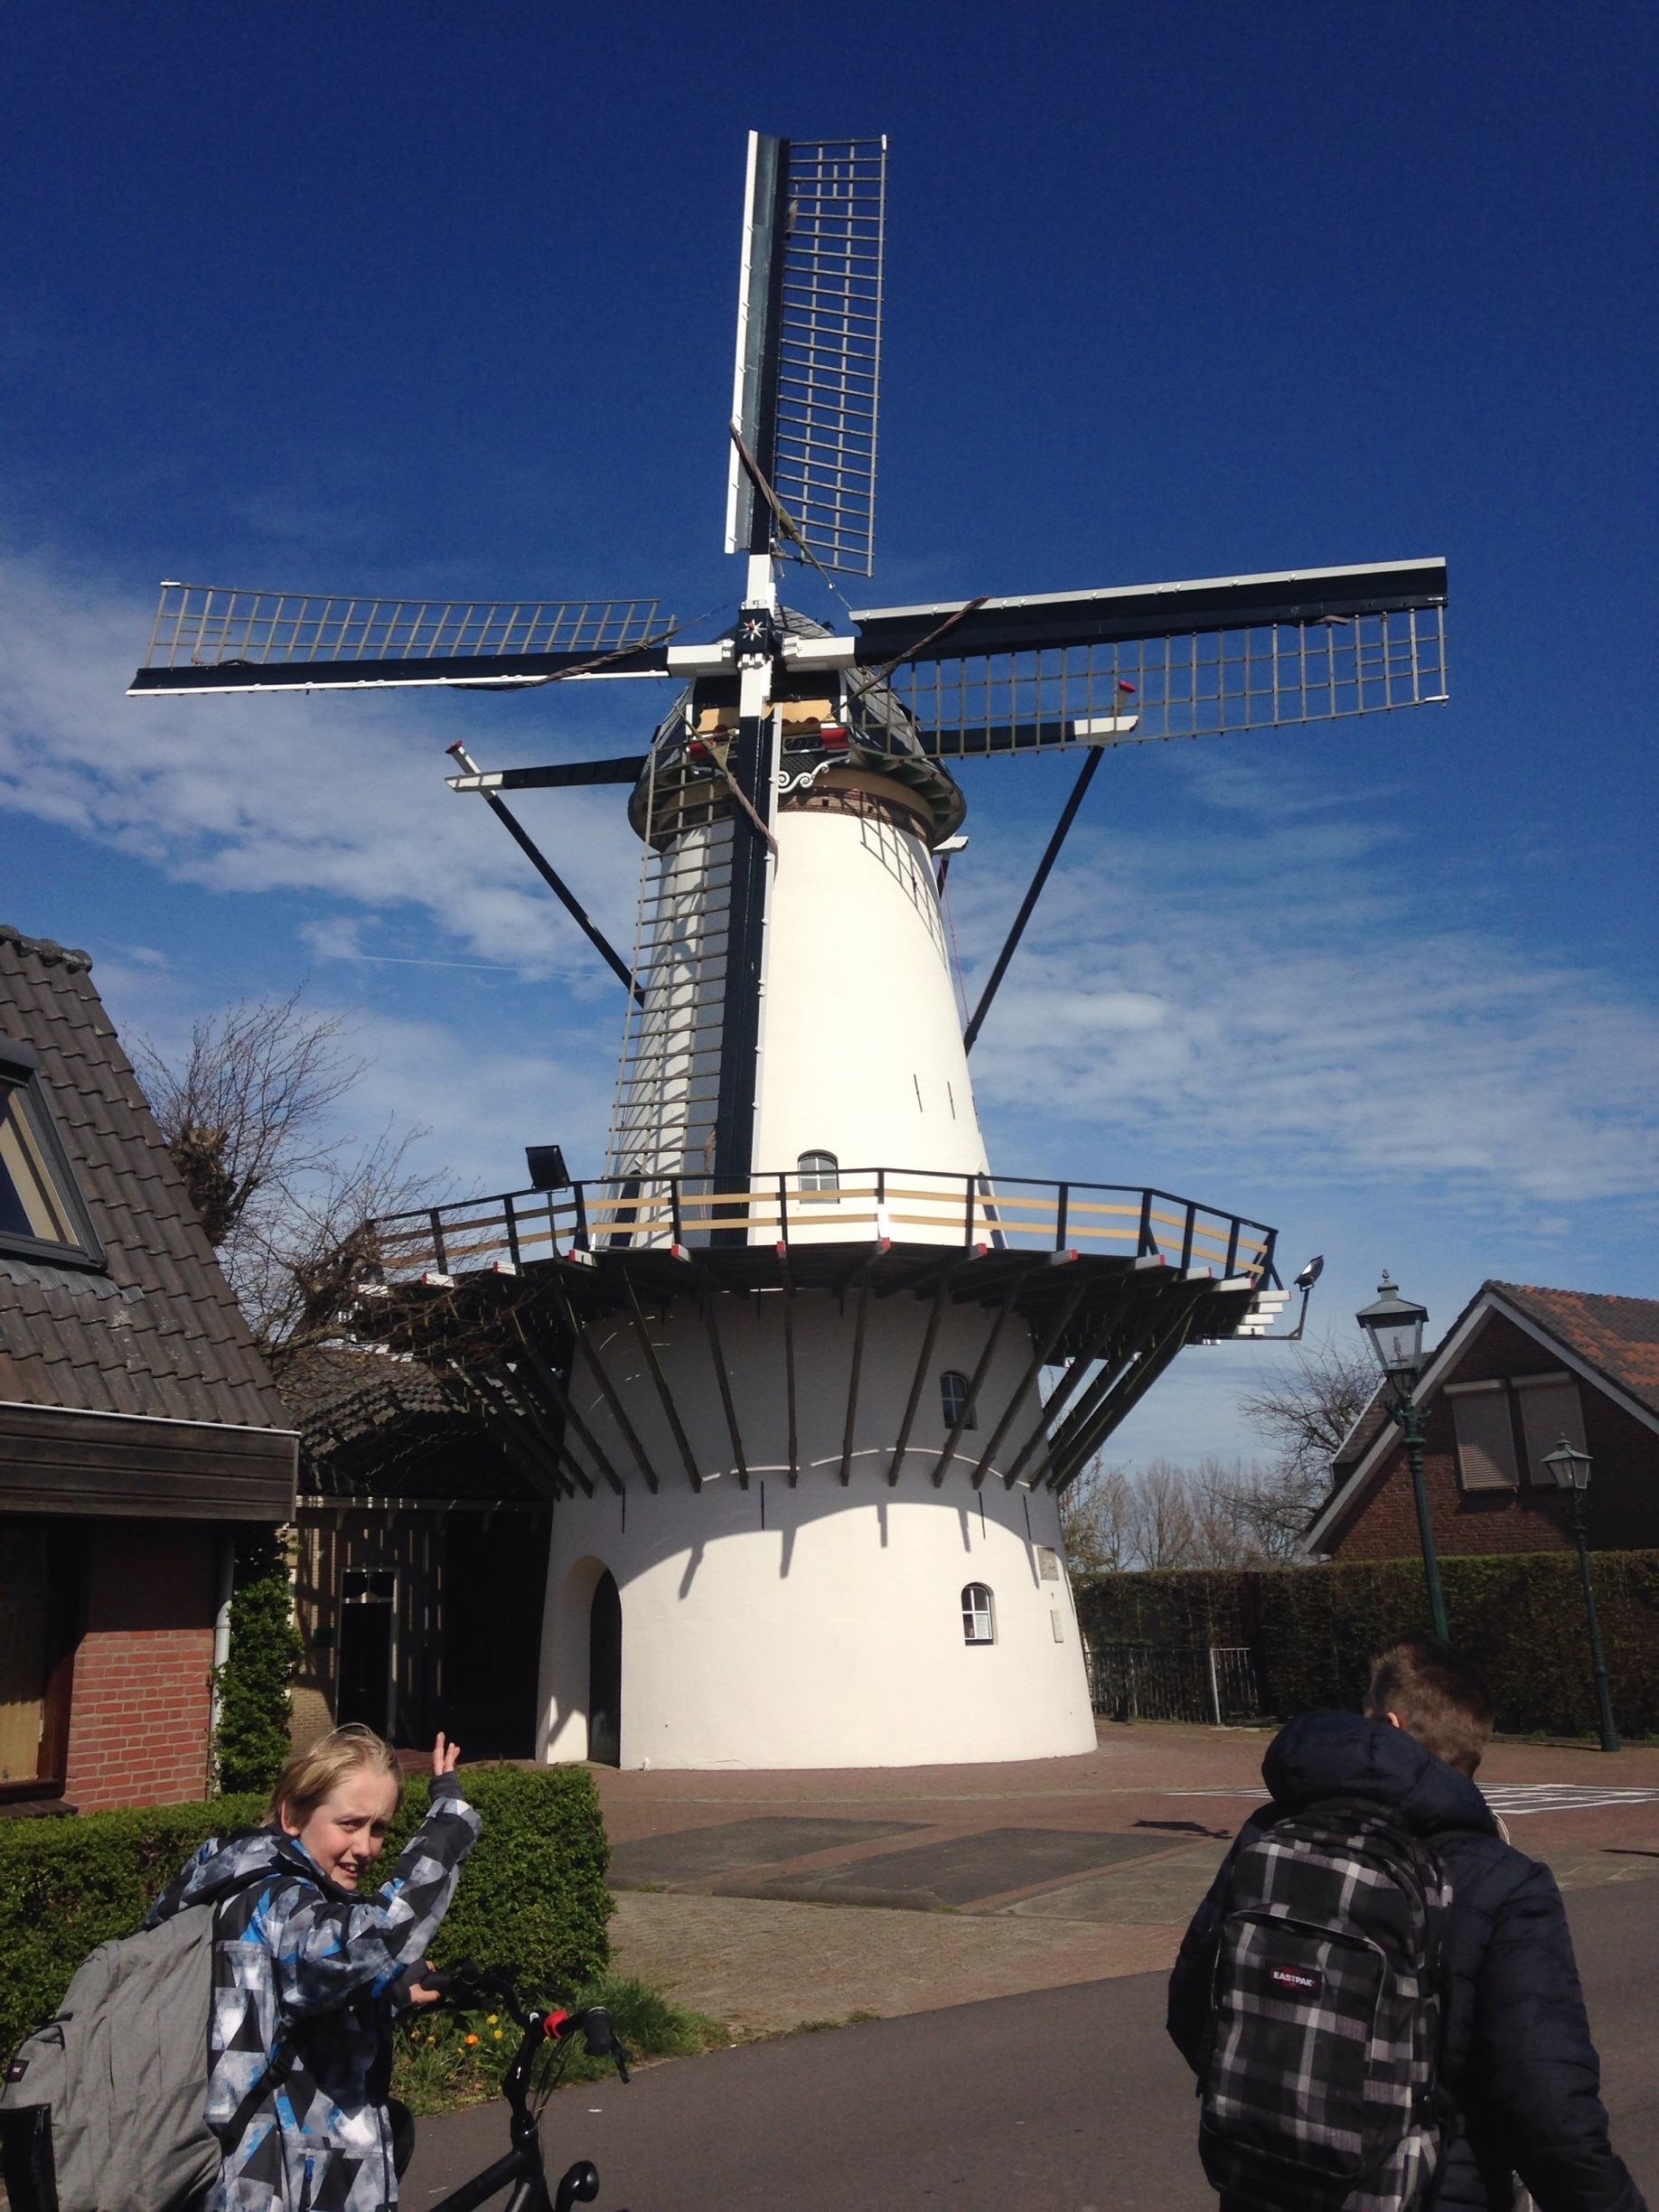 Municipality of Alphen aan den Rijn, South Holland, Netherlands